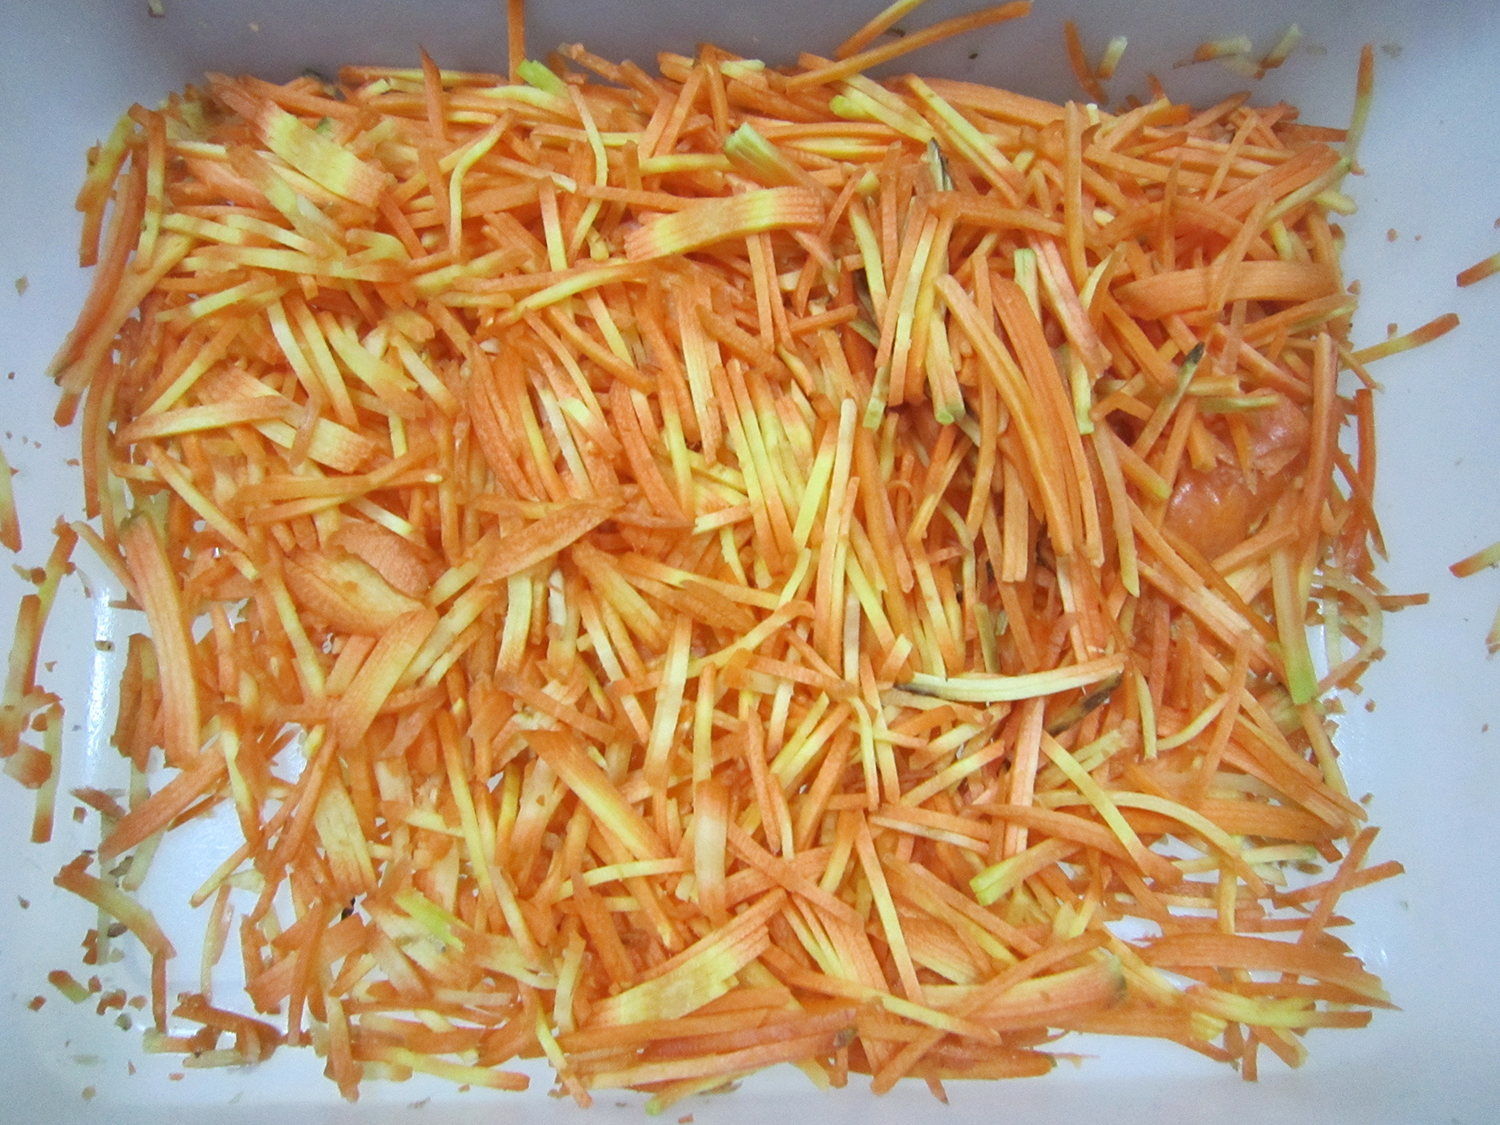 Carrot shredding